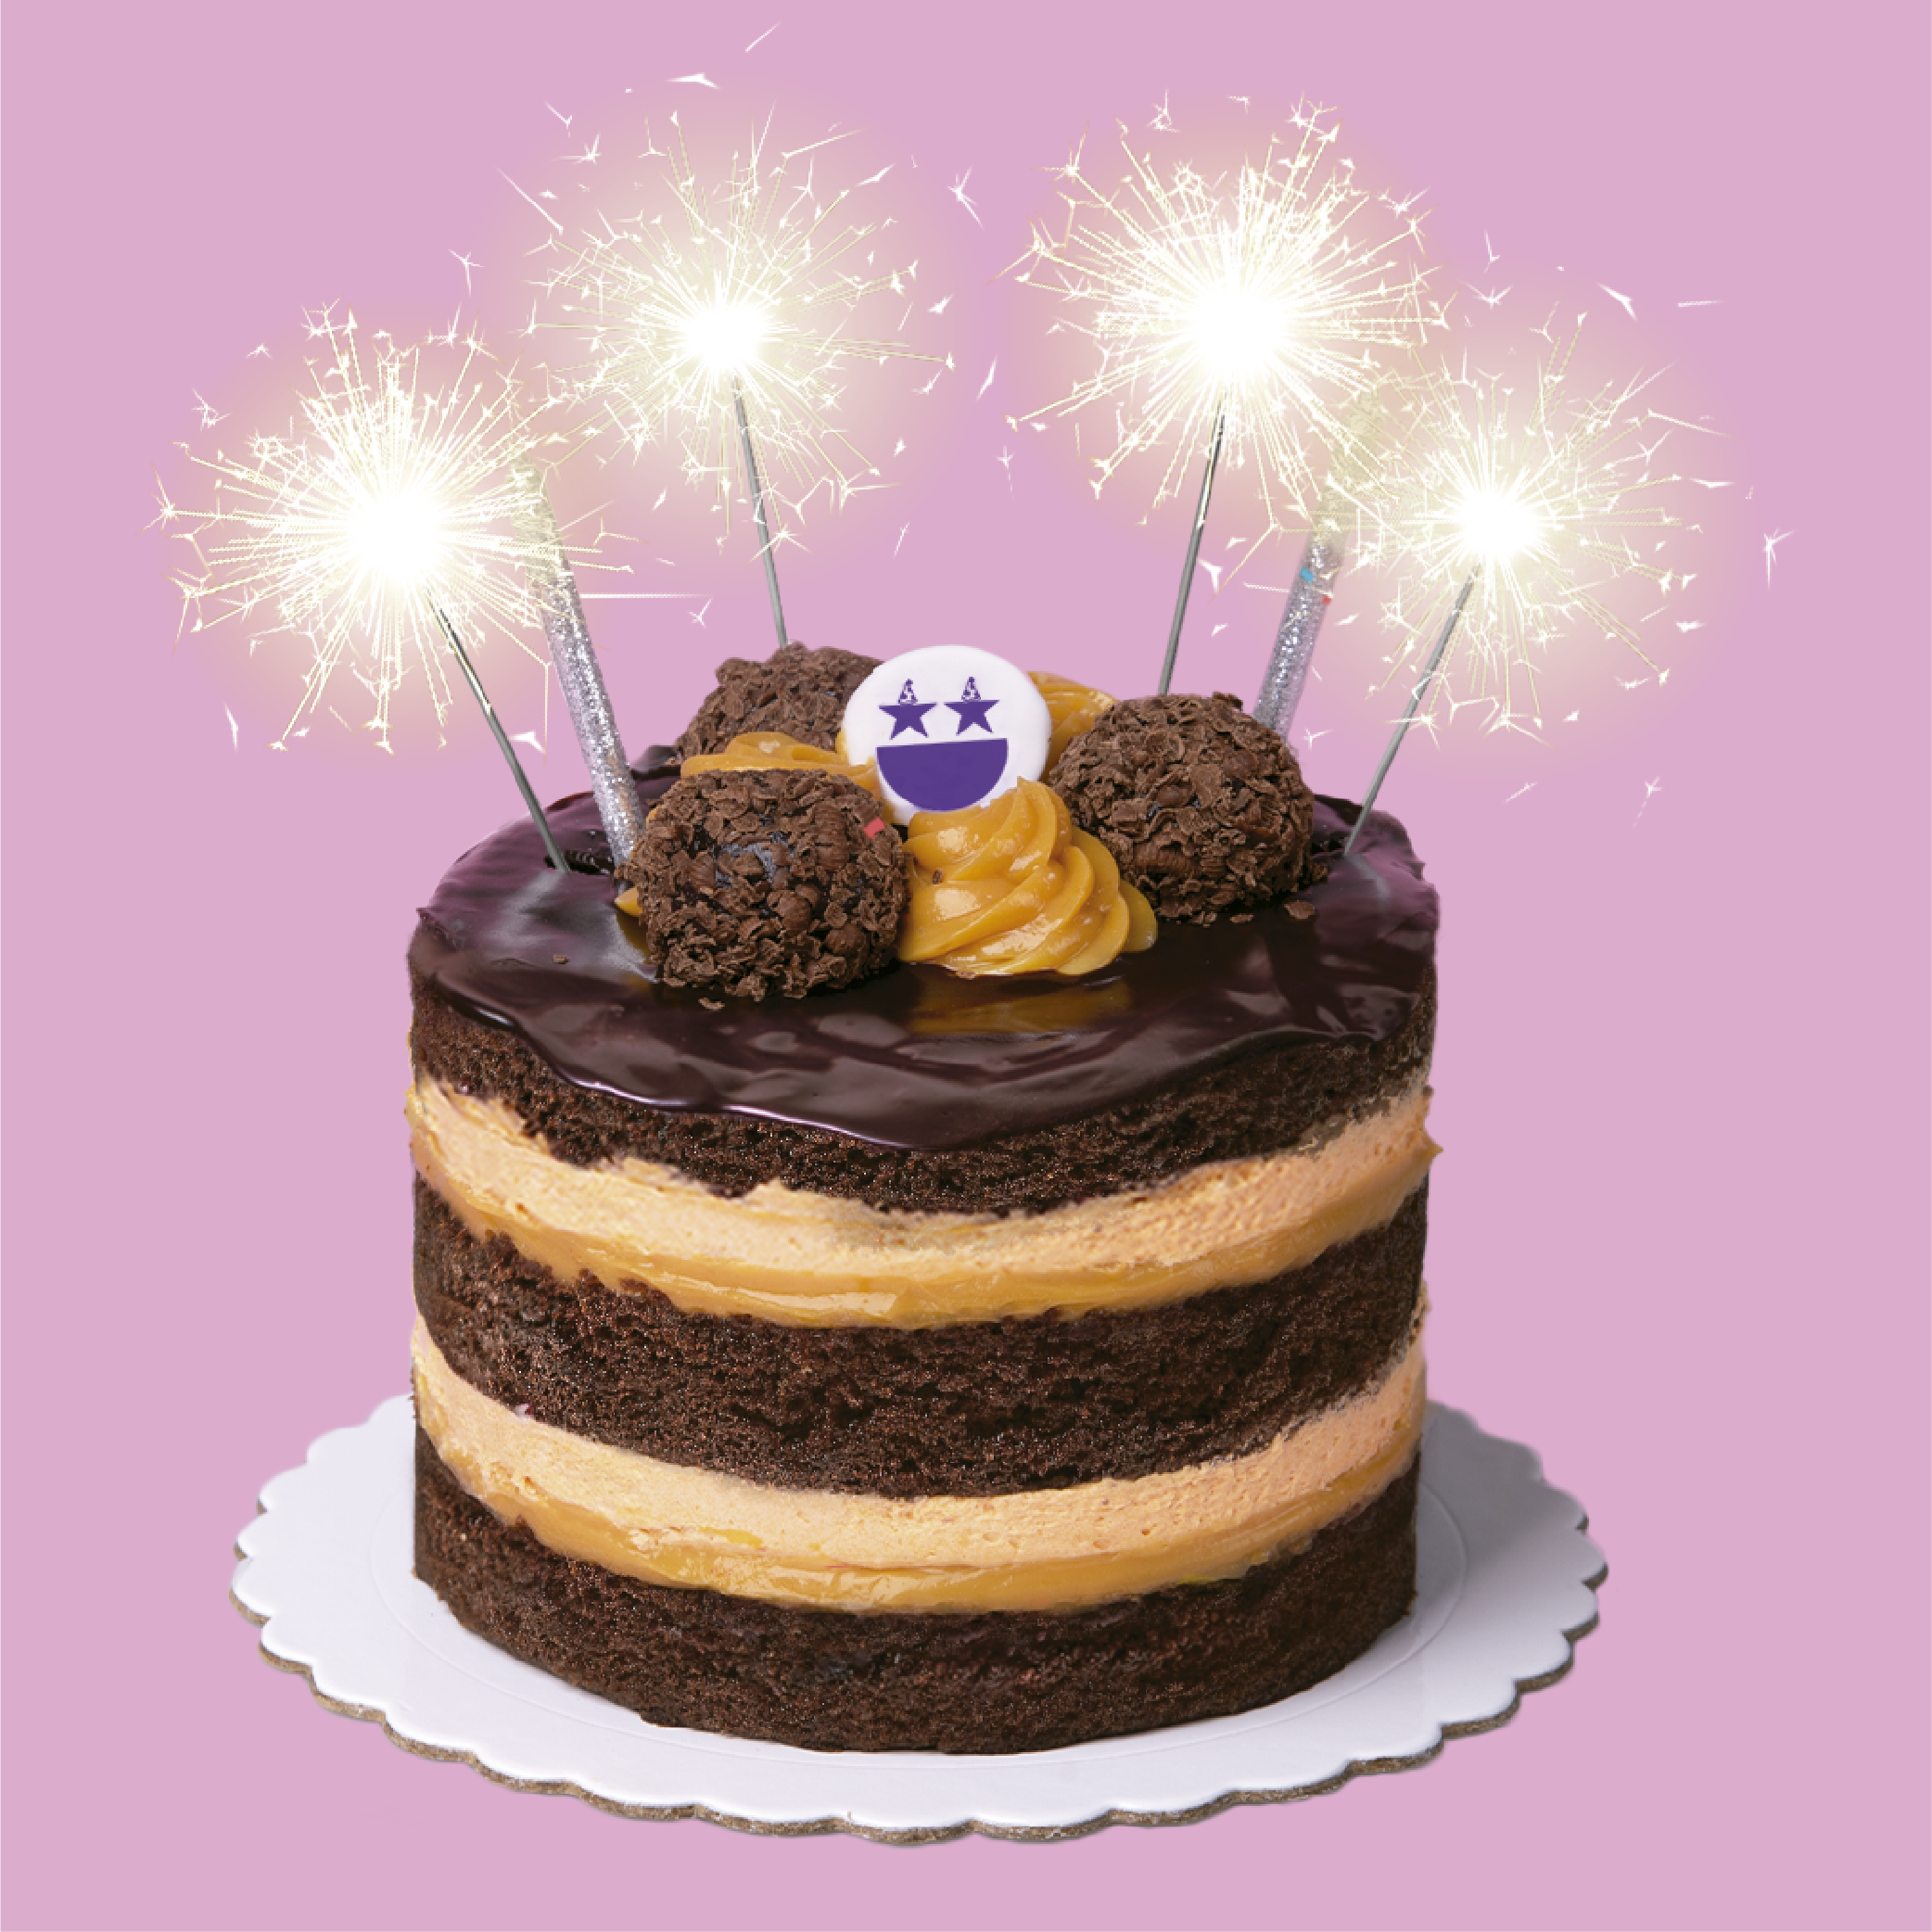 Mini torta con tres deliciosas capas de brownie, un exquisito doble relleno de pulpa de lucuma y manjar; y  decorado con deliciosas trufas de chocolate.

Medida: 14 cm de diámetro, 9 cm de altura

Porciones: 6 a 8
